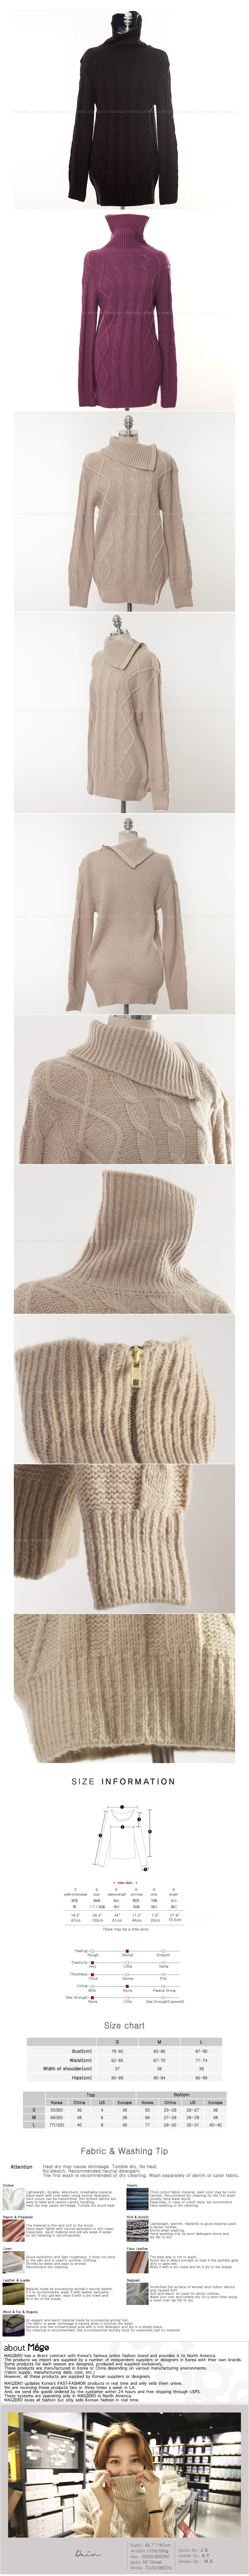 MAGZERO 【限量销售】 带拉链龟领混羊毛编织毛衣 #米色 均码 (S-M)